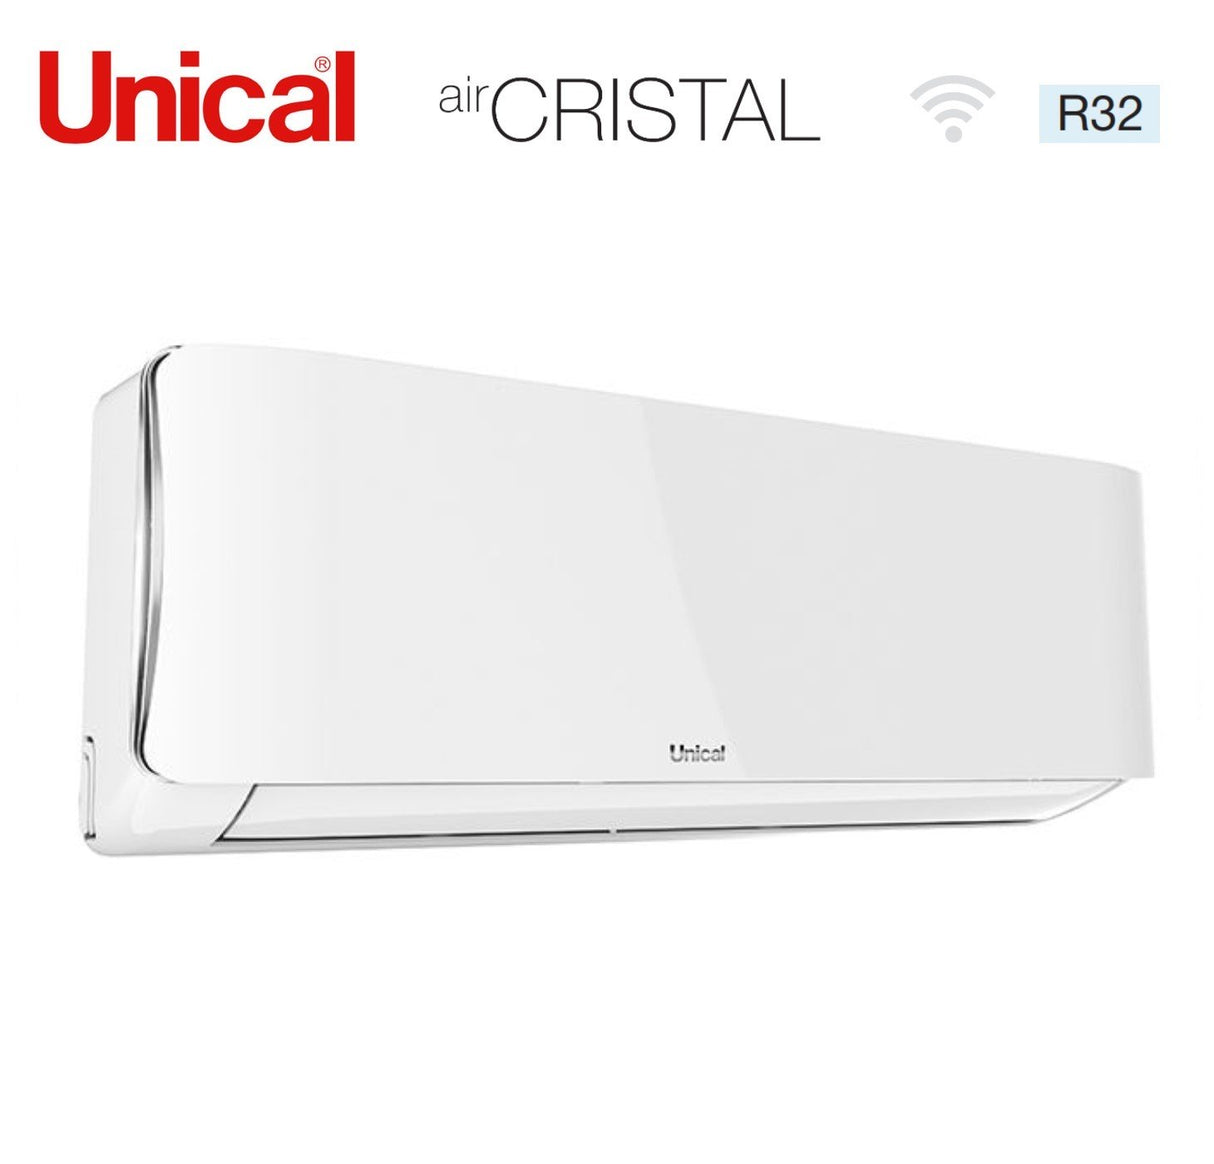 immagine-3-unical-climatizzatore-condizionatore-unical-quadri-split-inverter-serie-air-cristal-10101018-con-kmx4-36he-r-32-wi-fi-optional-10000100001000018000